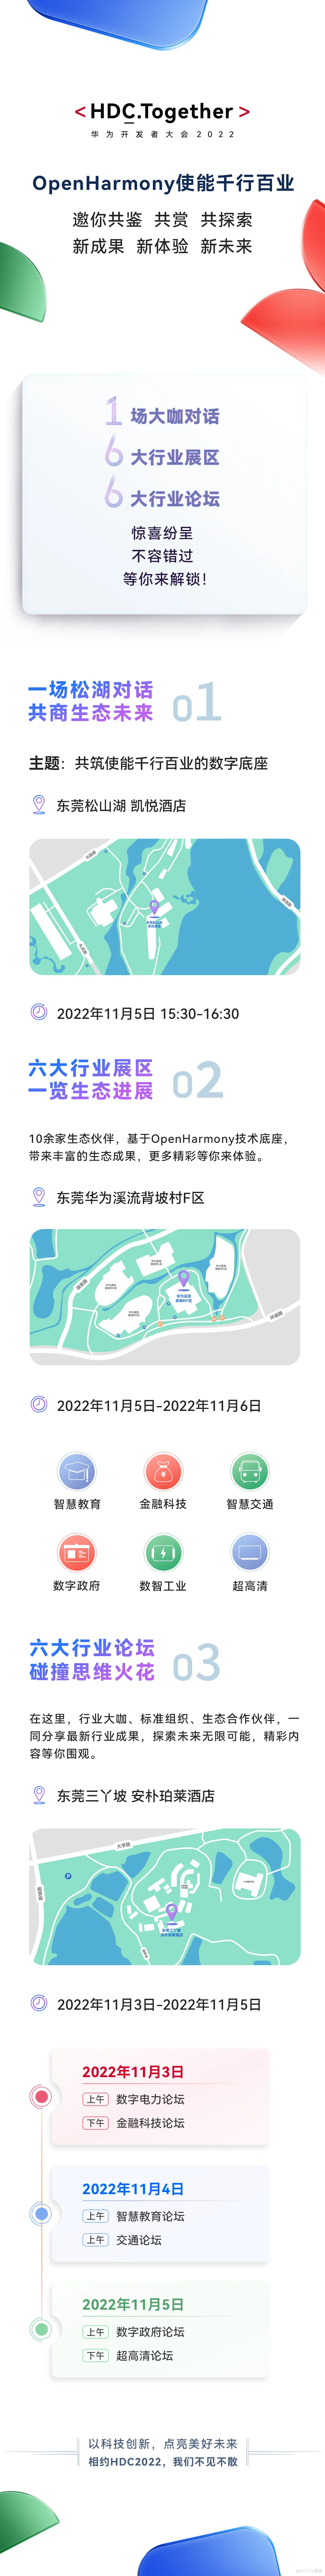 OpenHarmony将携新成果亮相HDC2022​-鸿蒙开发者社区